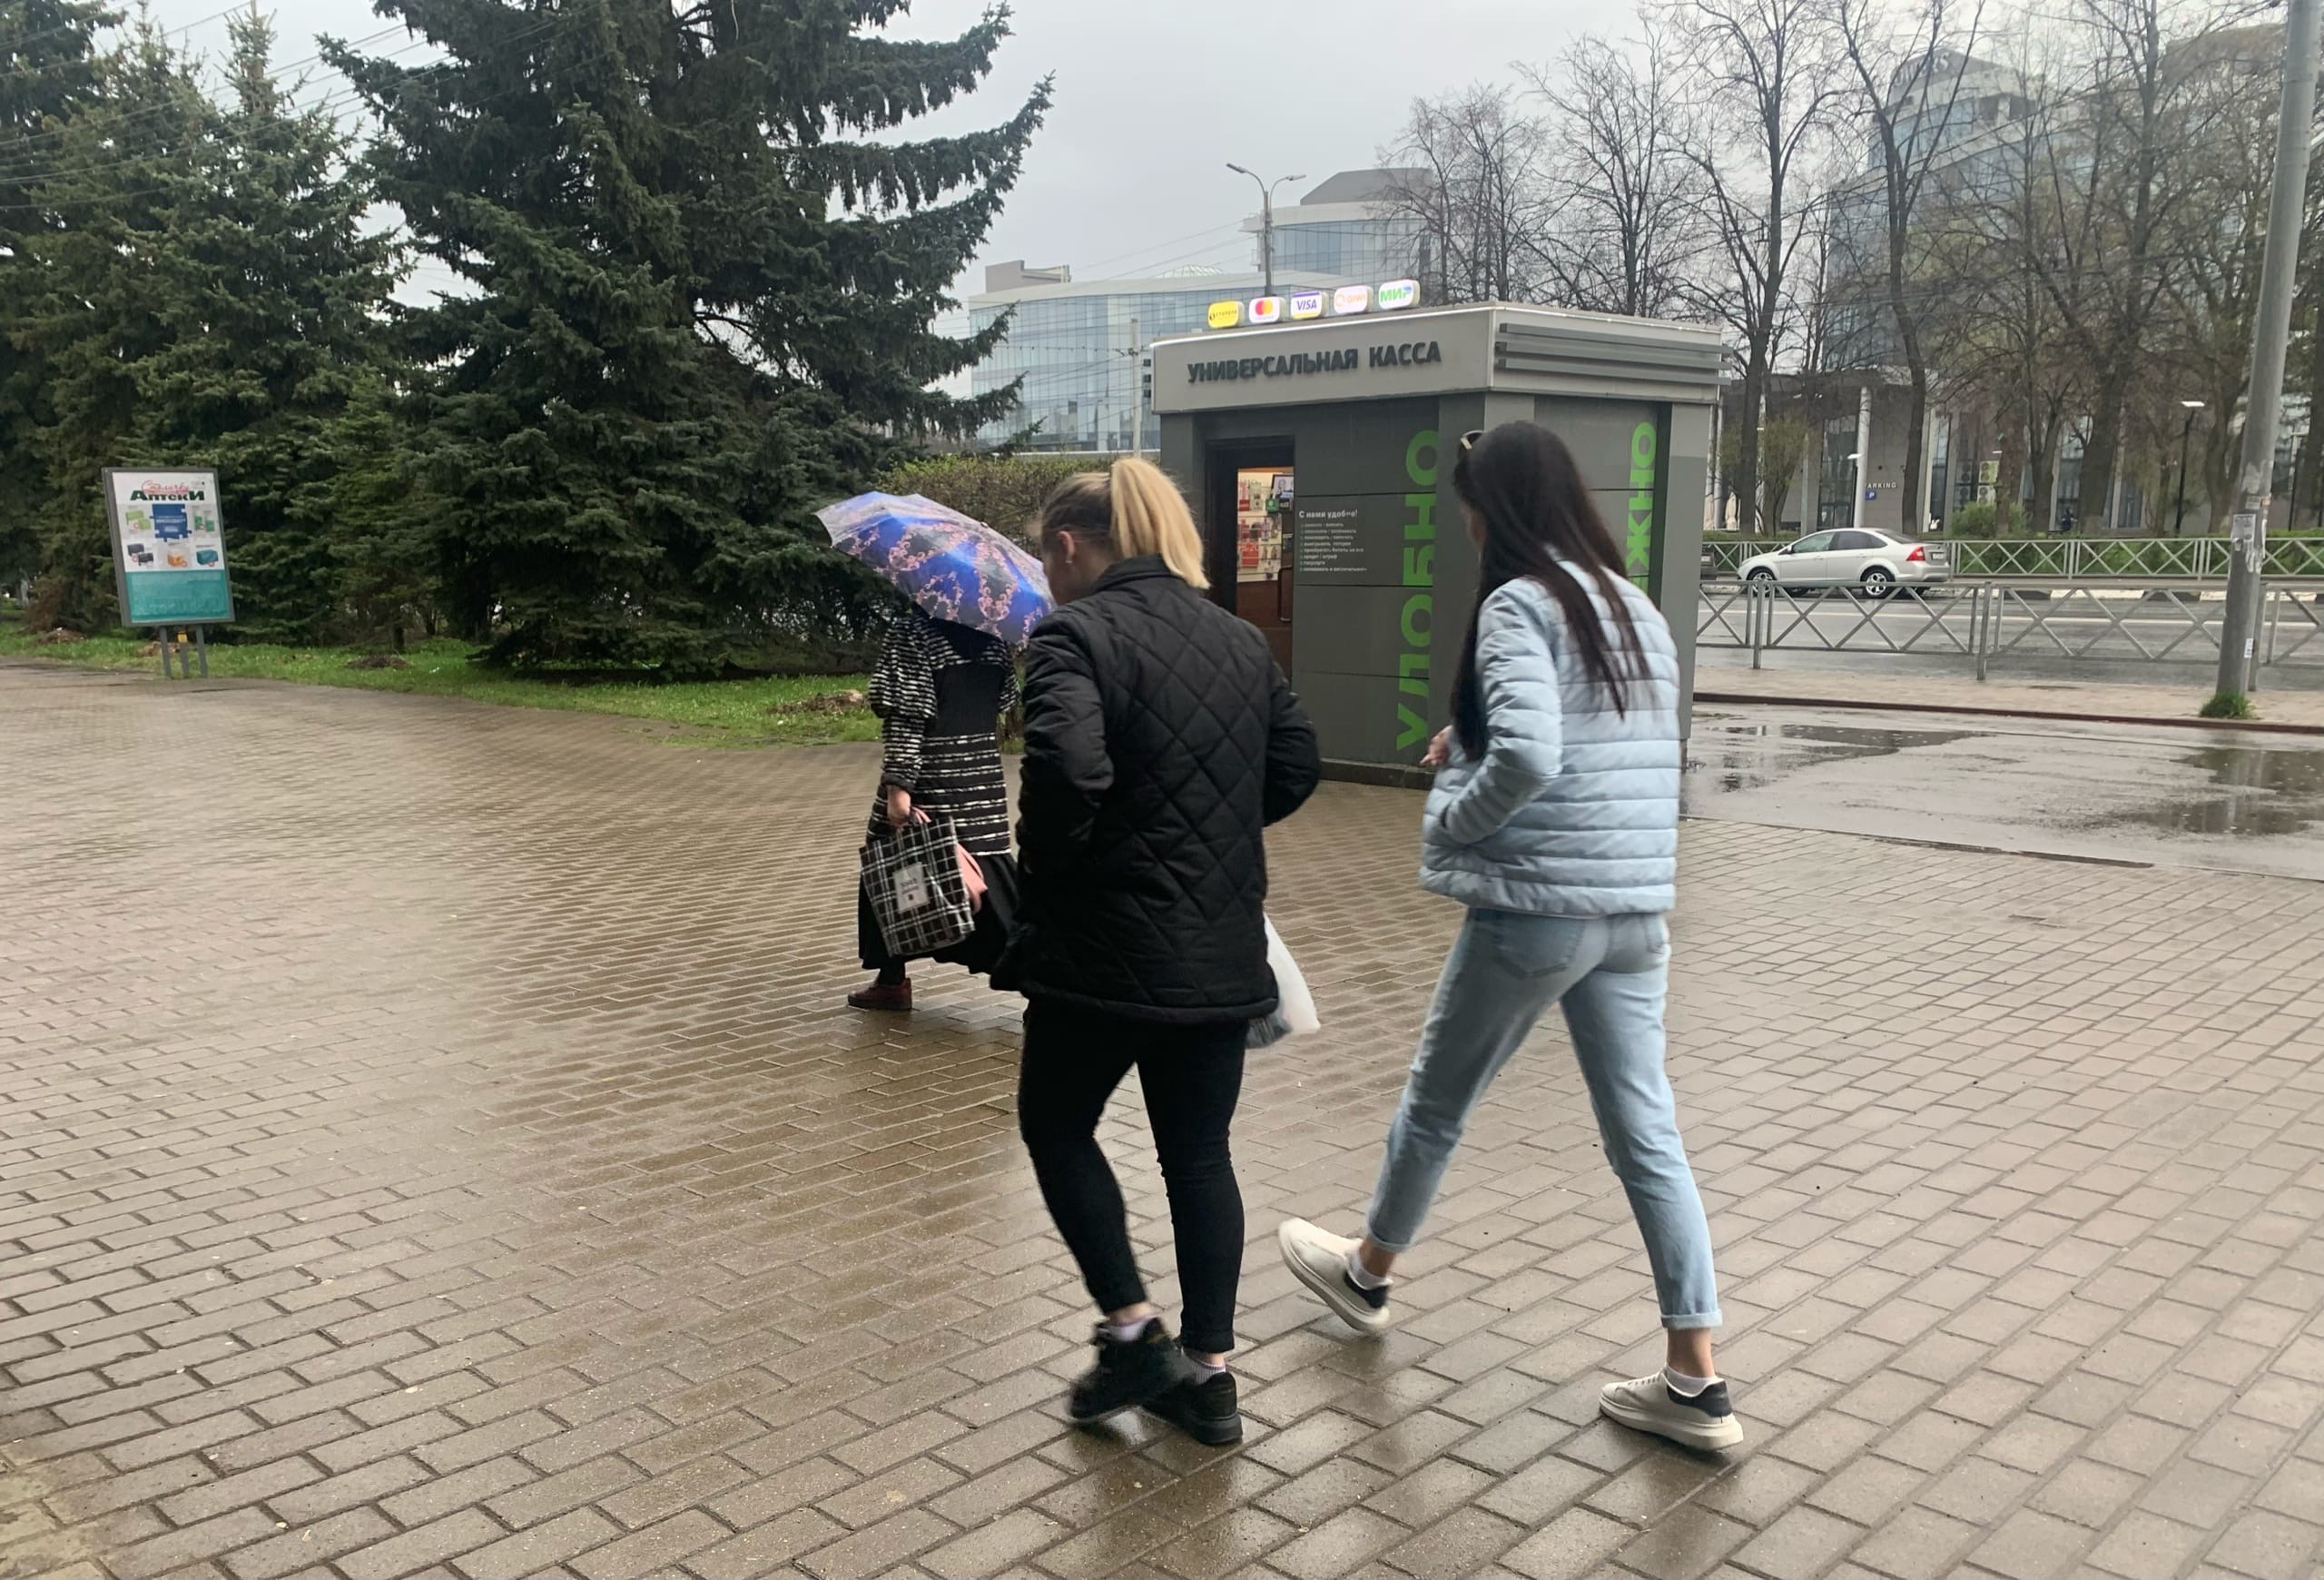  Грозы, холод и жара надвигаются на Ярославль в ближайшие дни